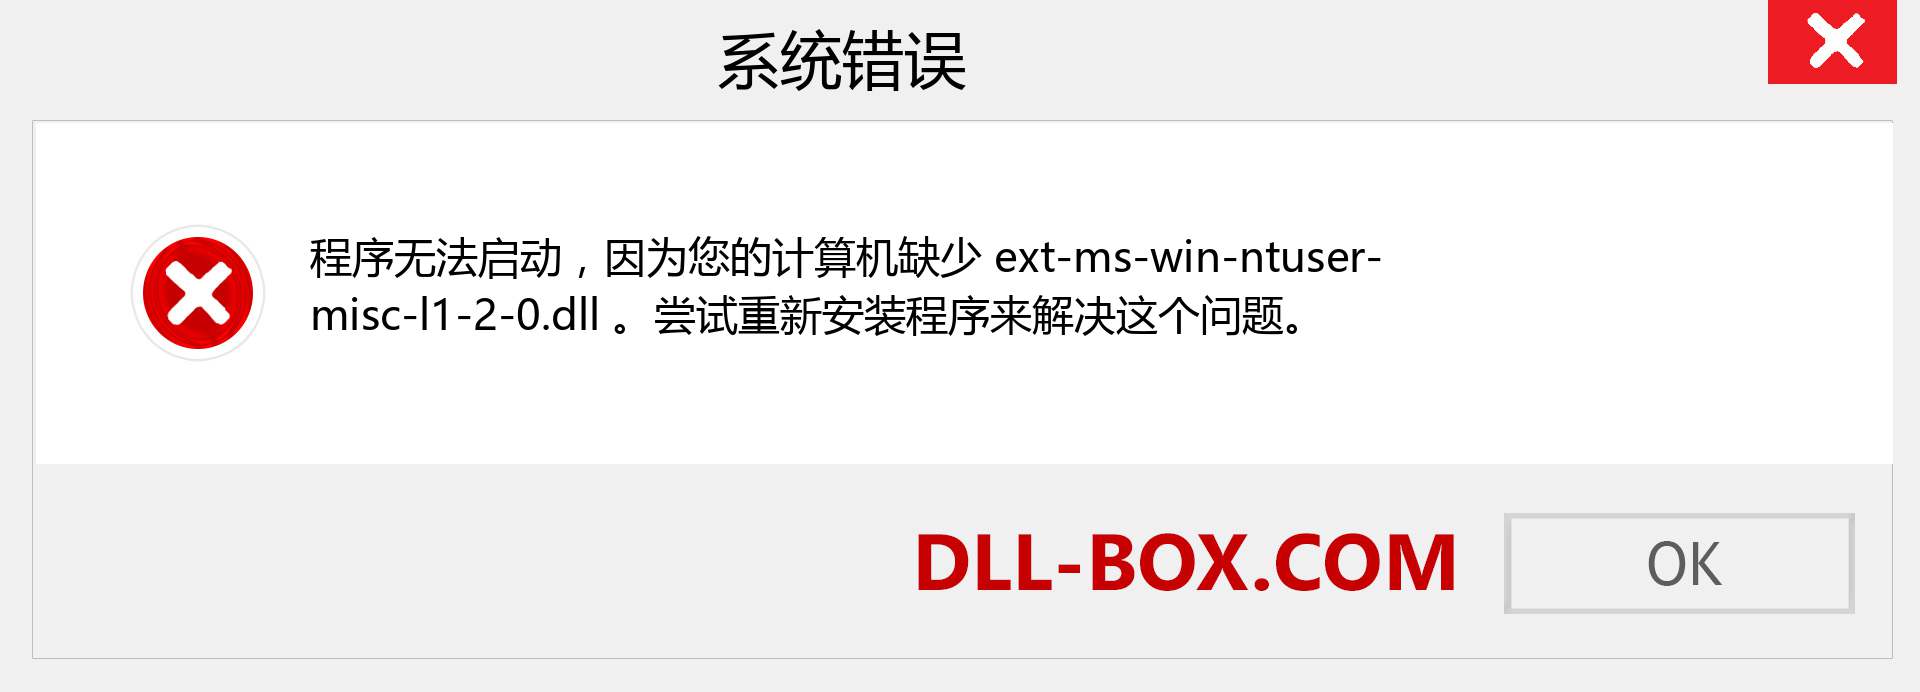 ext-ms-win-ntuser-misc-l1-2-0.dll 文件丢失？。 适用于 Windows 7、8、10 的下载 - 修复 Windows、照片、图像上的 ext-ms-win-ntuser-misc-l1-2-0 dll 丢失错误